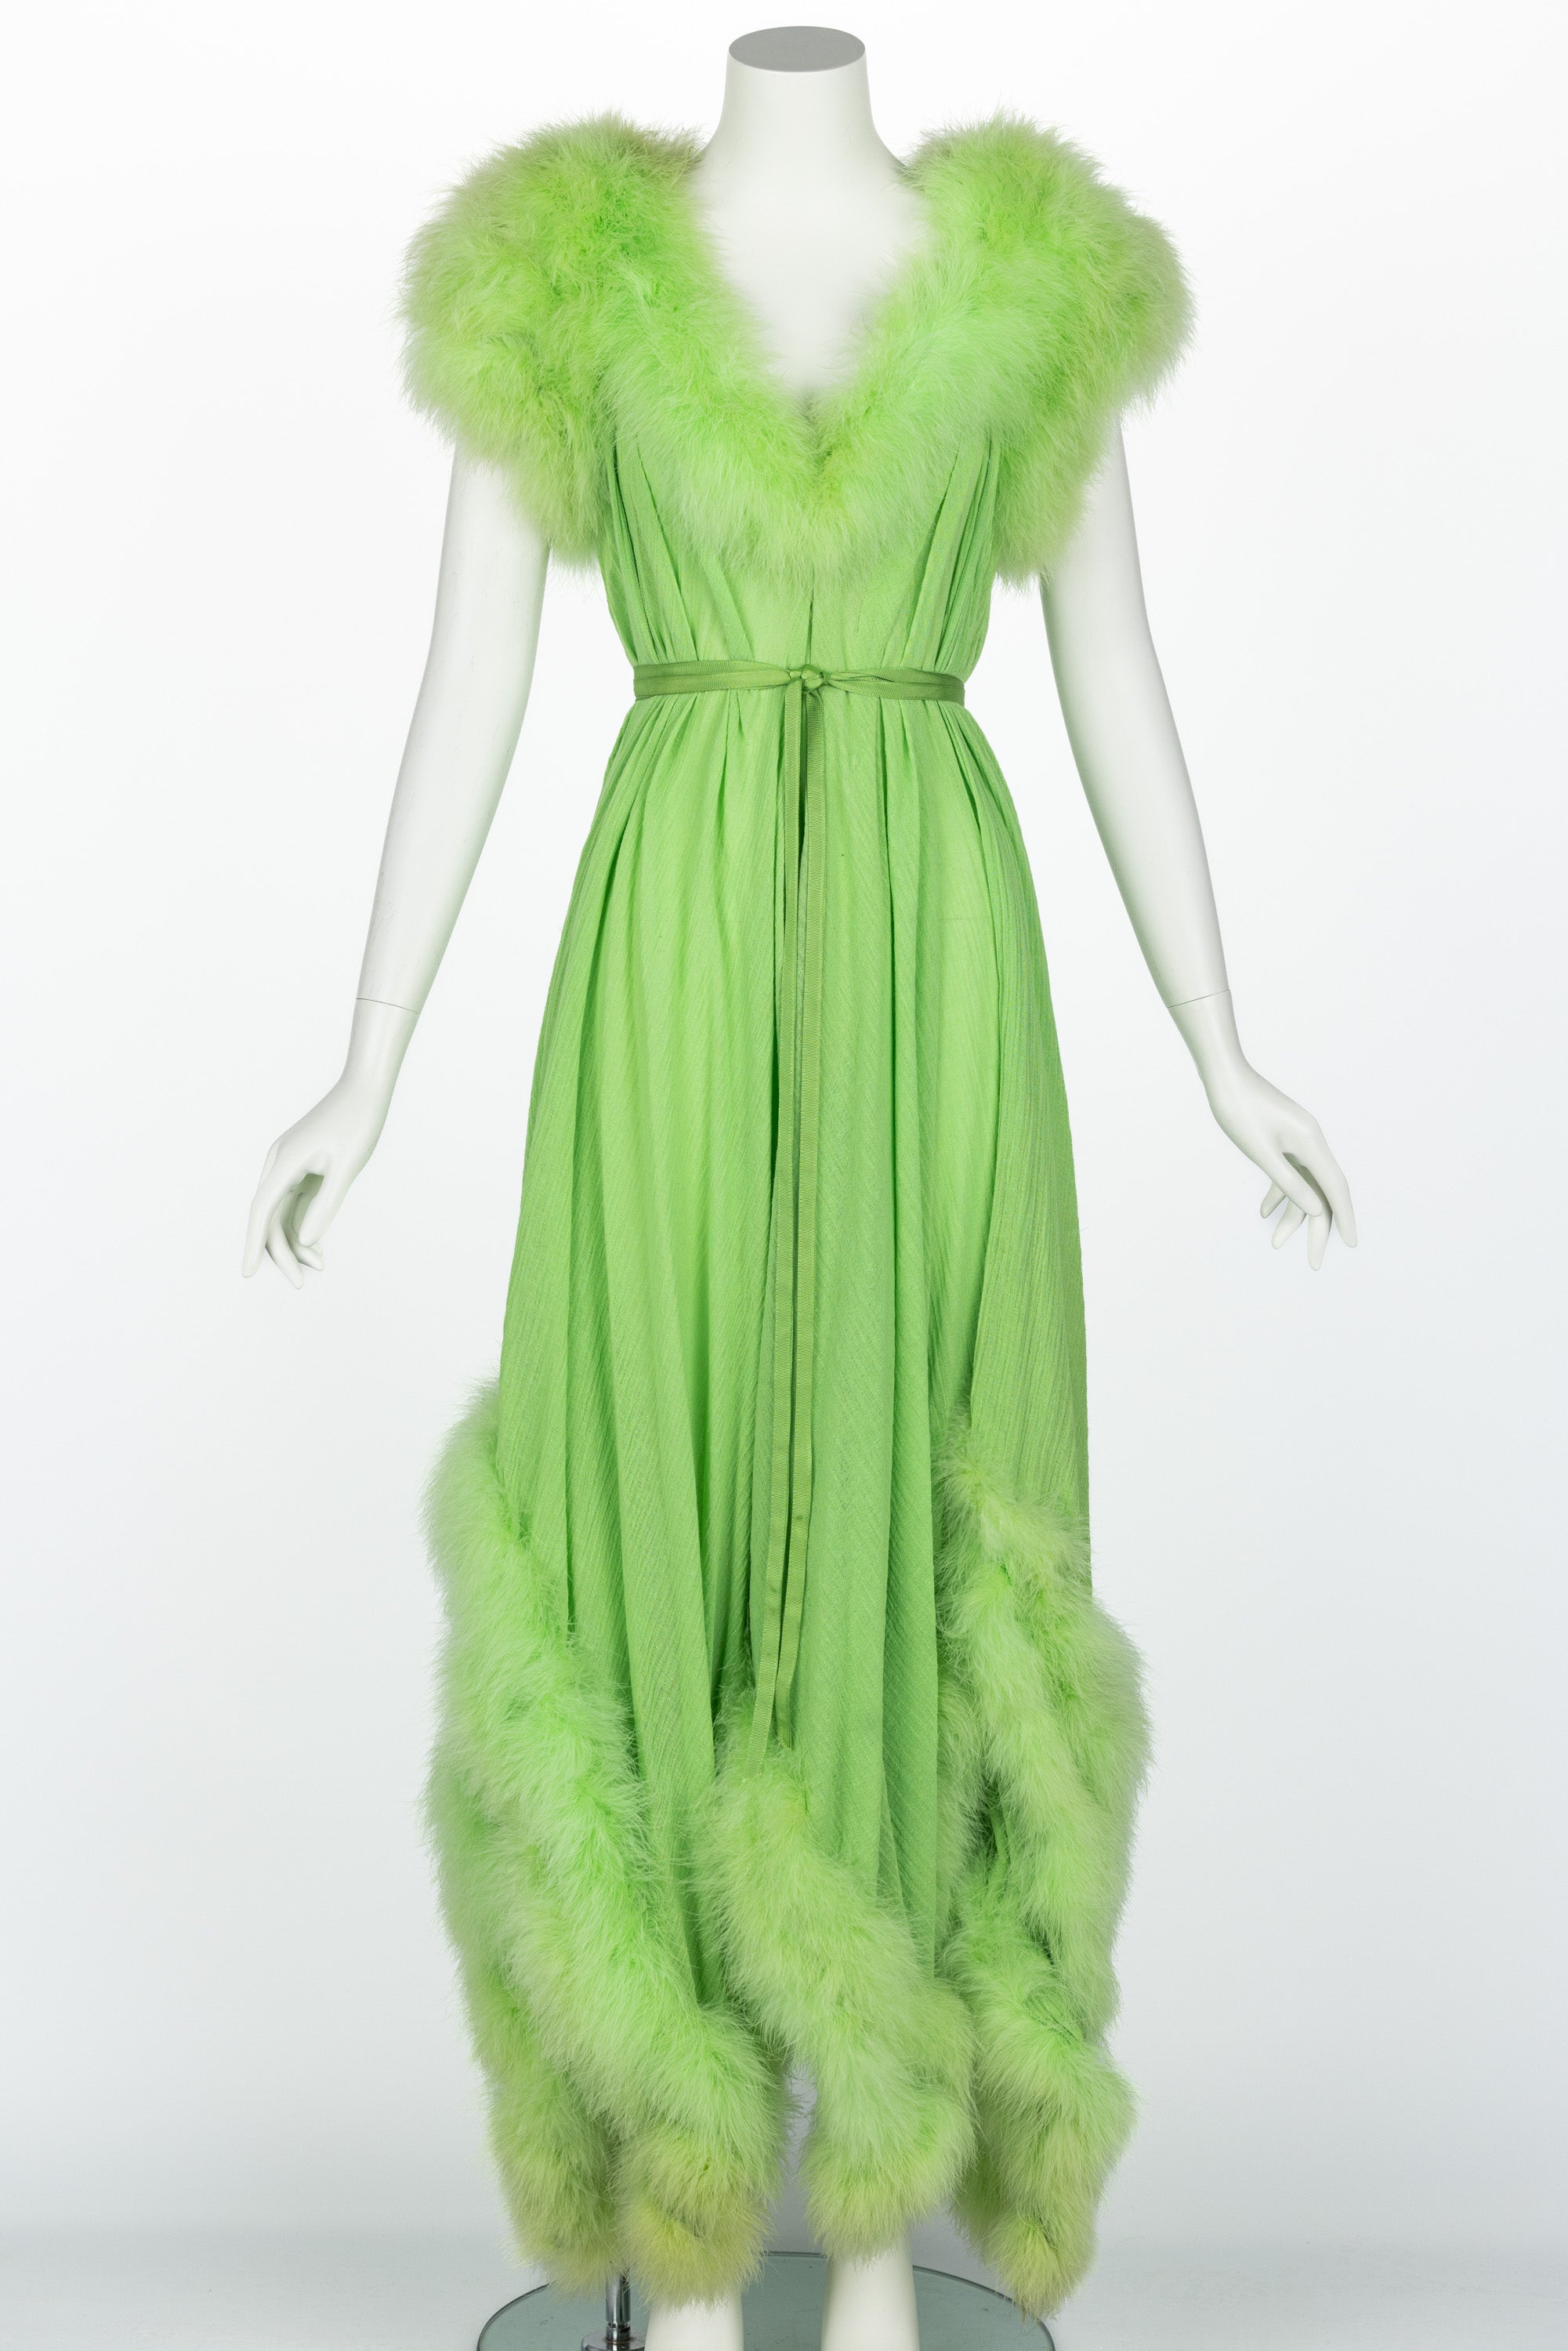 Dieses fabelhafte Maxikleid im Vintage-Stil trifft genau den richtigen Ton. Der hellgrüne Stoff, der sich wie ein Baumwoll-Leinen-Gemisch anfühlt, erinnert mühelos an den sinnlichen Glamour der 1950er Jahre und strahlt gleichzeitig eine zeitlose